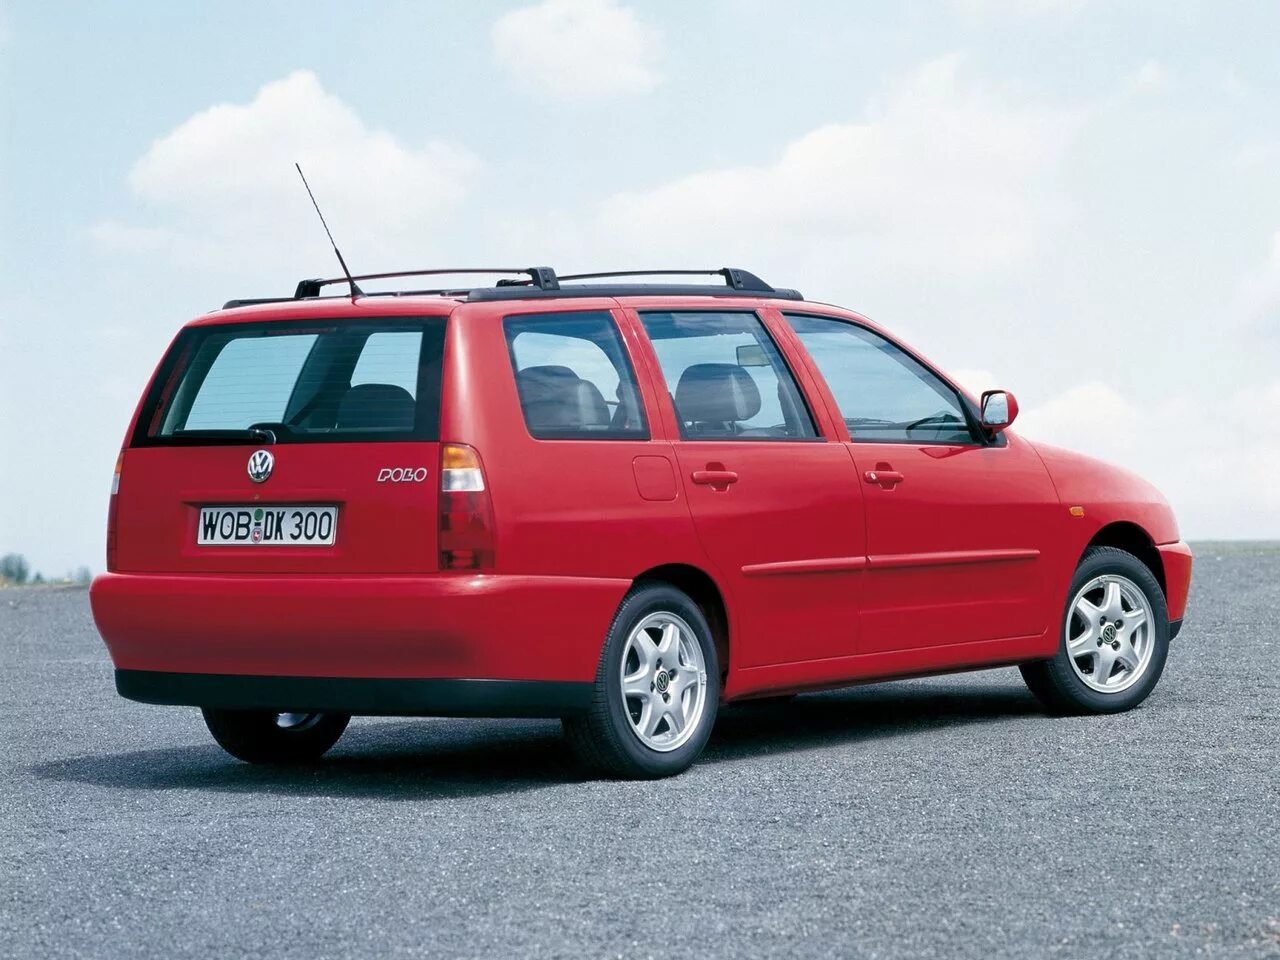 Фольксваген поло универсал 2000. Volkswagen Polo 2000 универсал. Volkswagen Polo 3 универсал. Фольксваген поло универсал 1997. Фольксваген поло 3 поколение